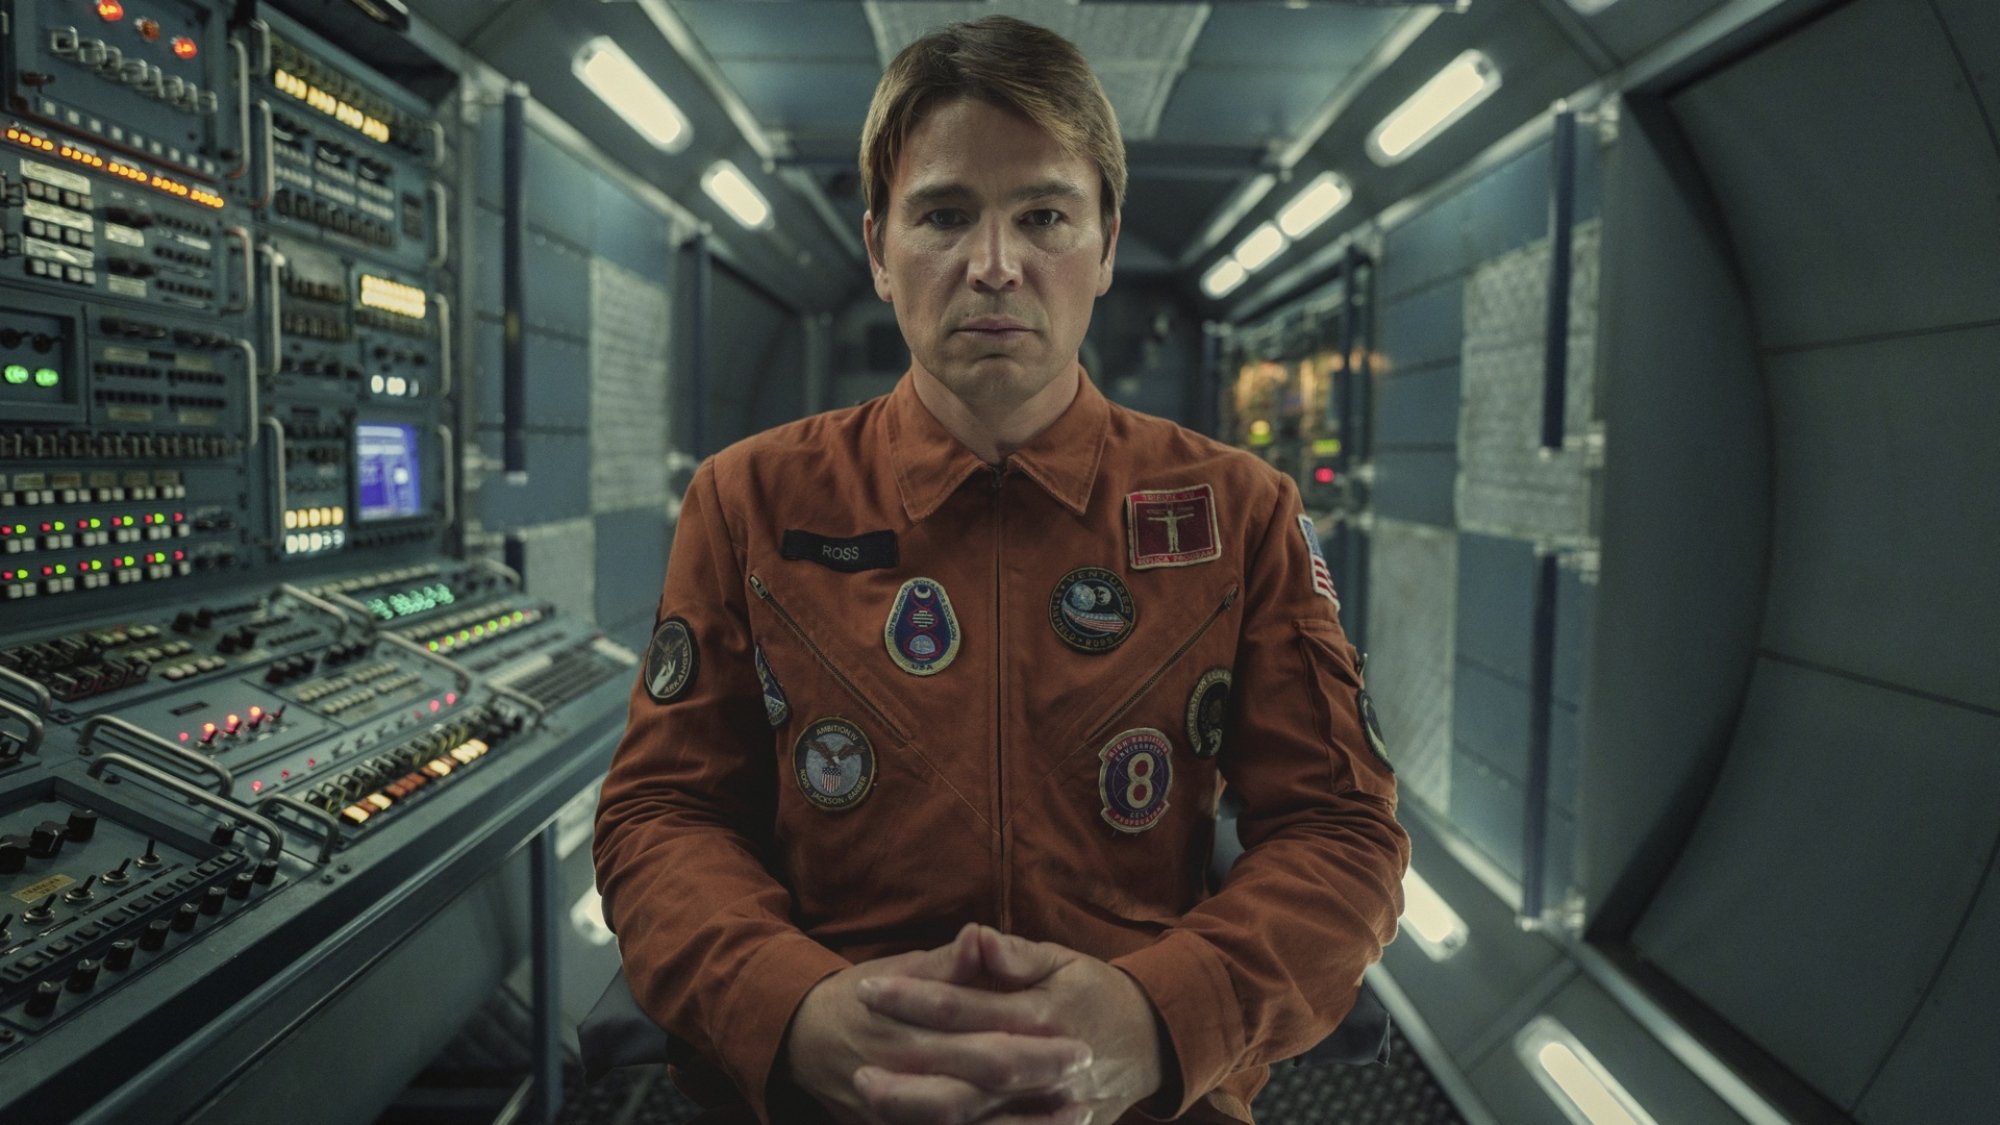 Un homme vêtu d'une combinaison d'astronaute orange regarde fixement la caméra depuis l'intérieur d'une salle de contrôle.